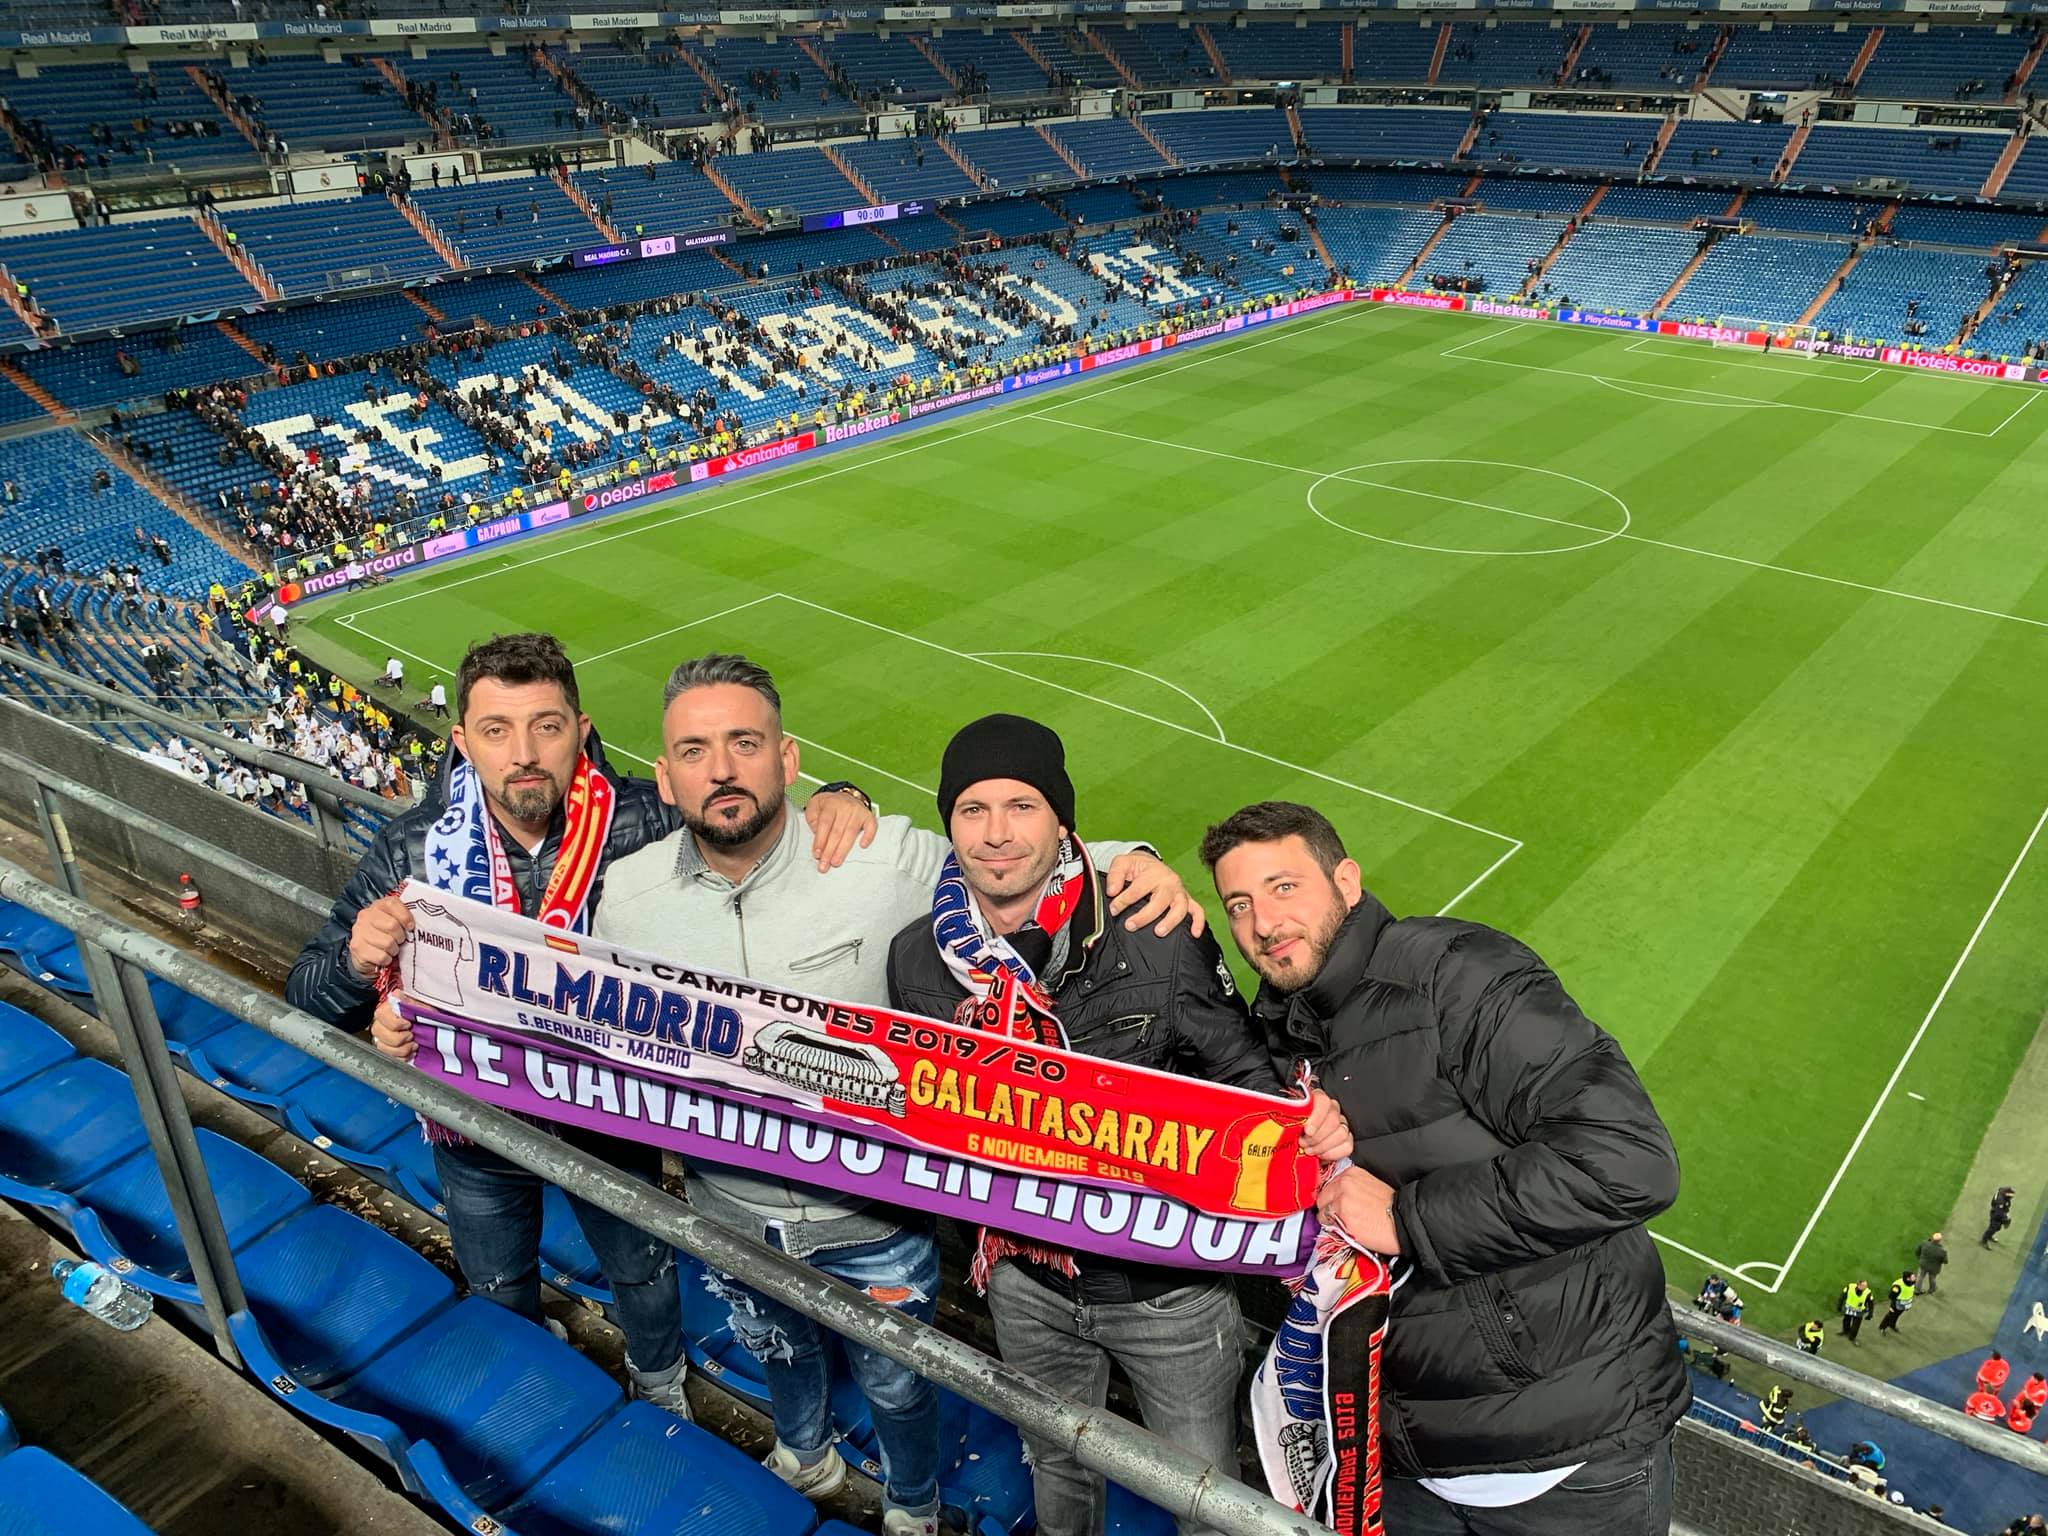 2019-11-06-Berna-Madridista-Fans.jpg